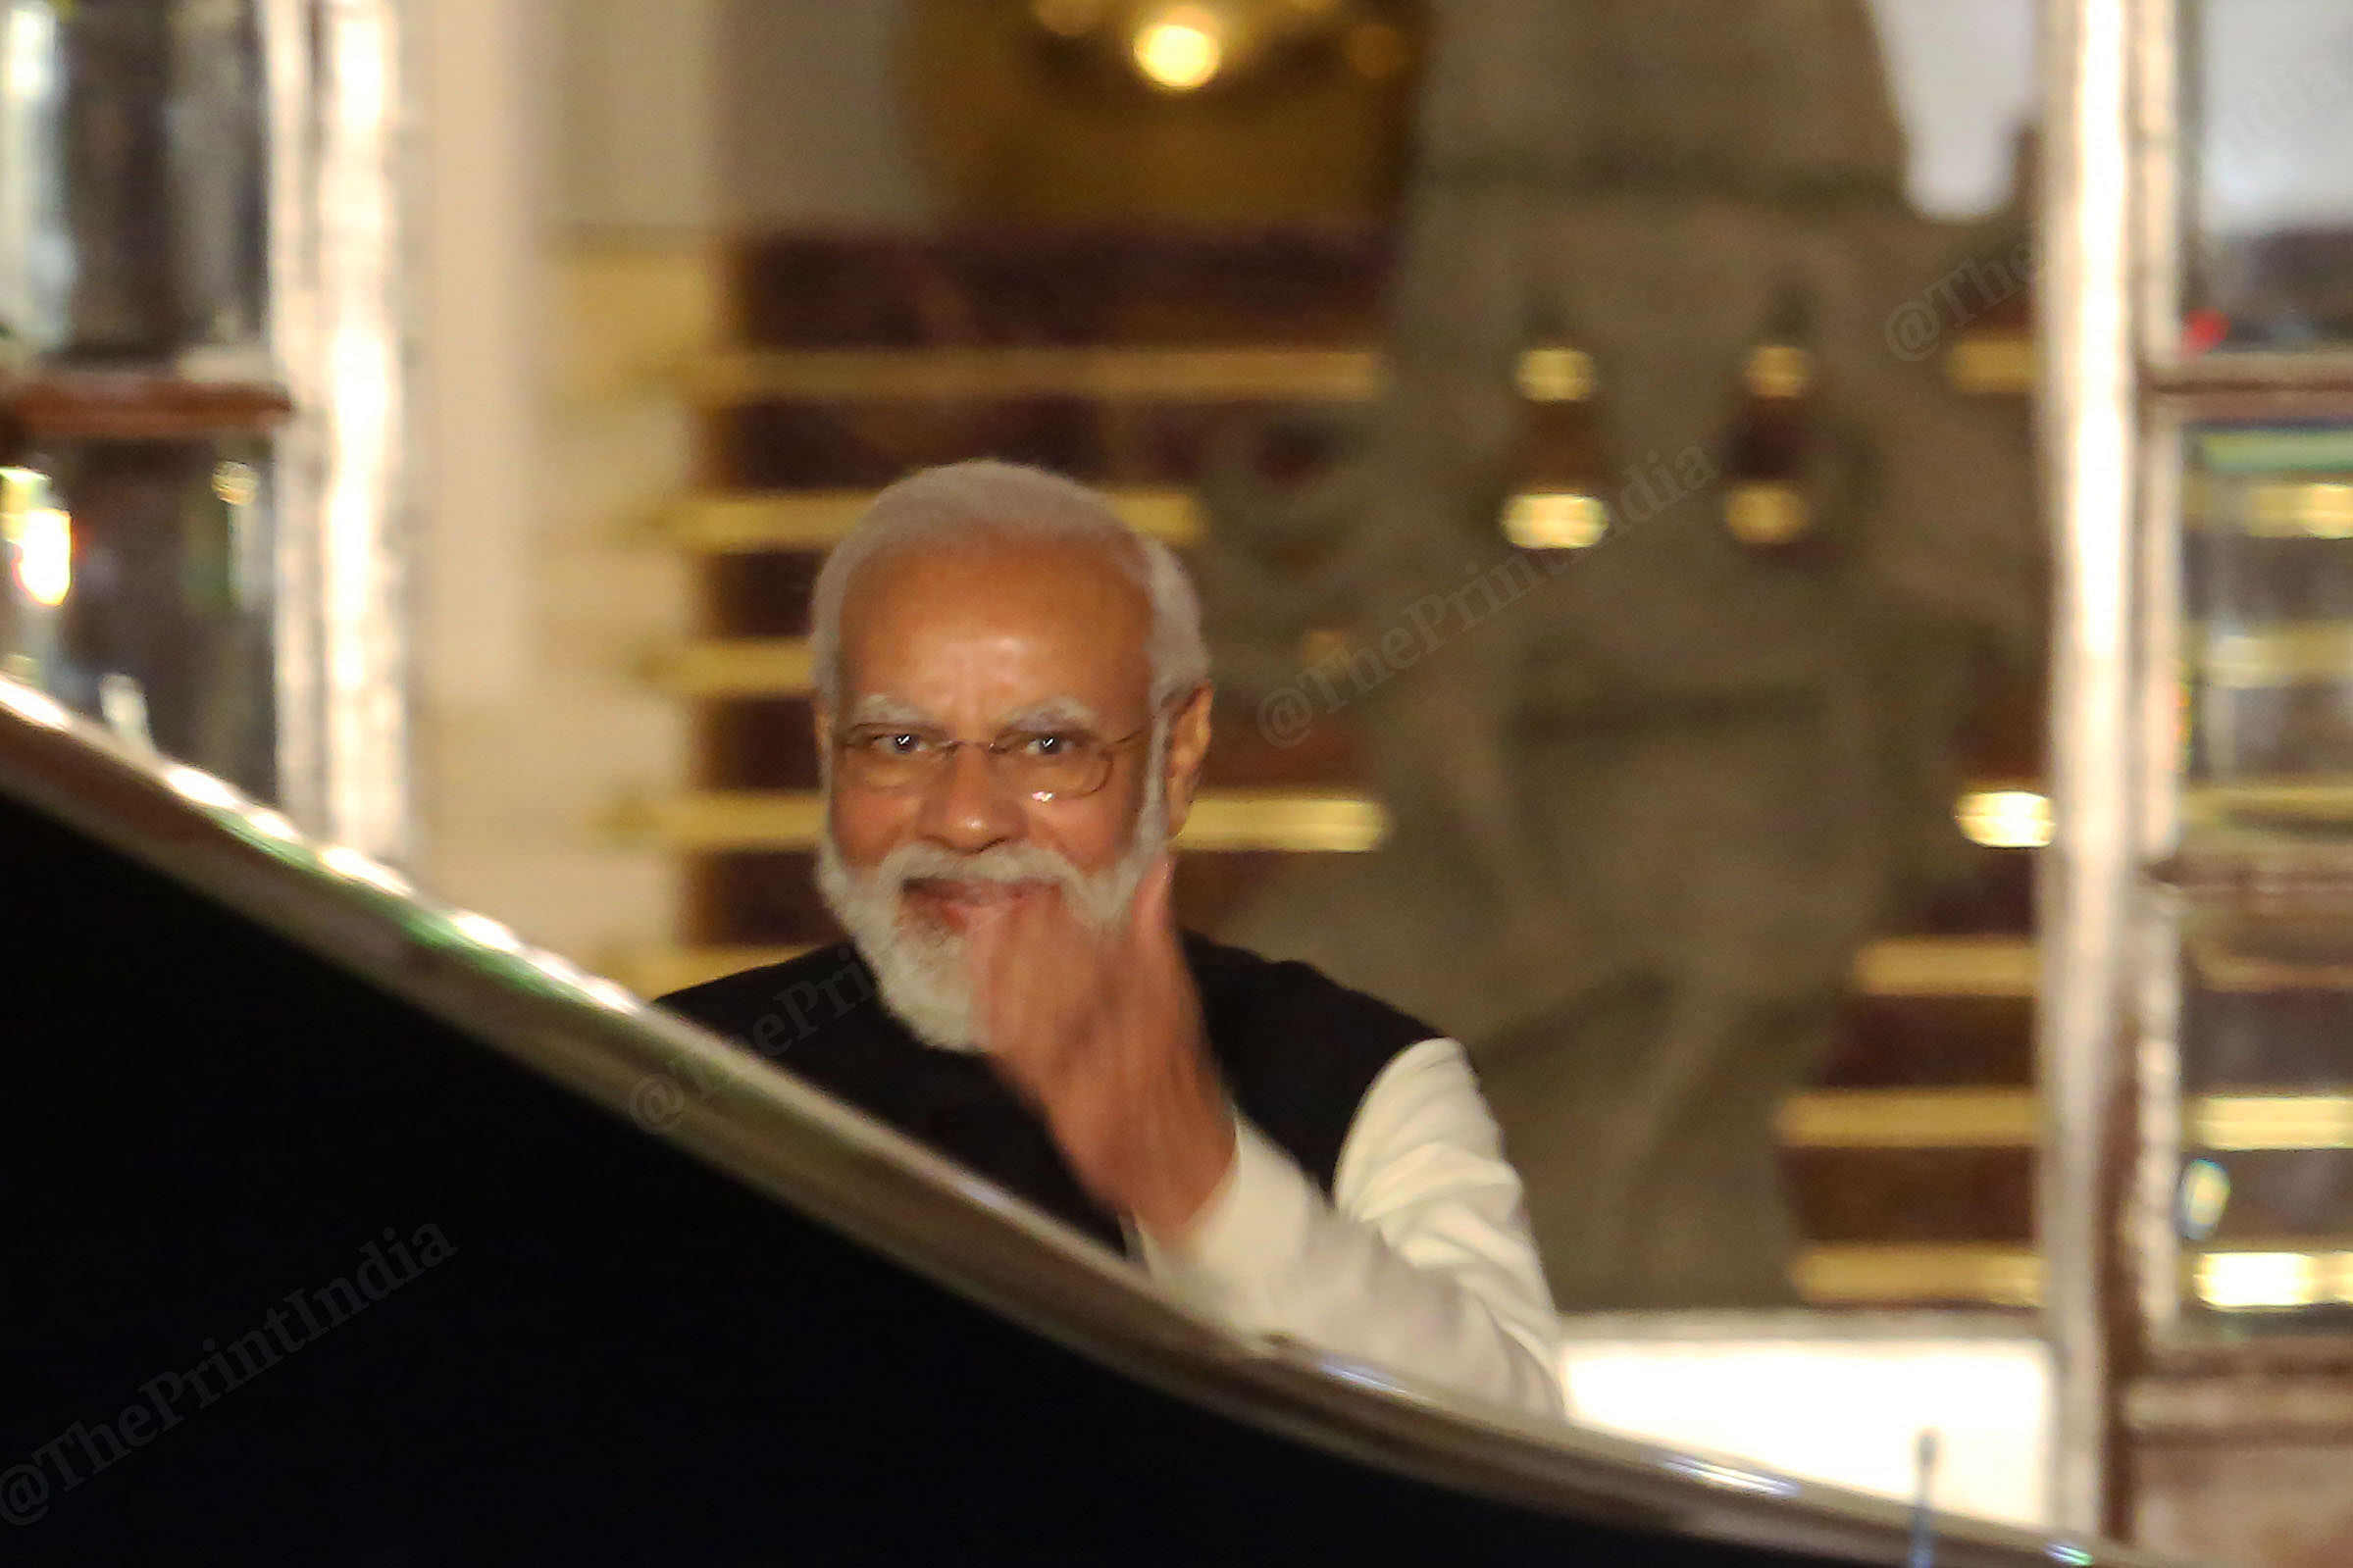 PM Modi is all smiles as President Vladimir Putin arrives| Photo: Praveen Jain | ThePrint